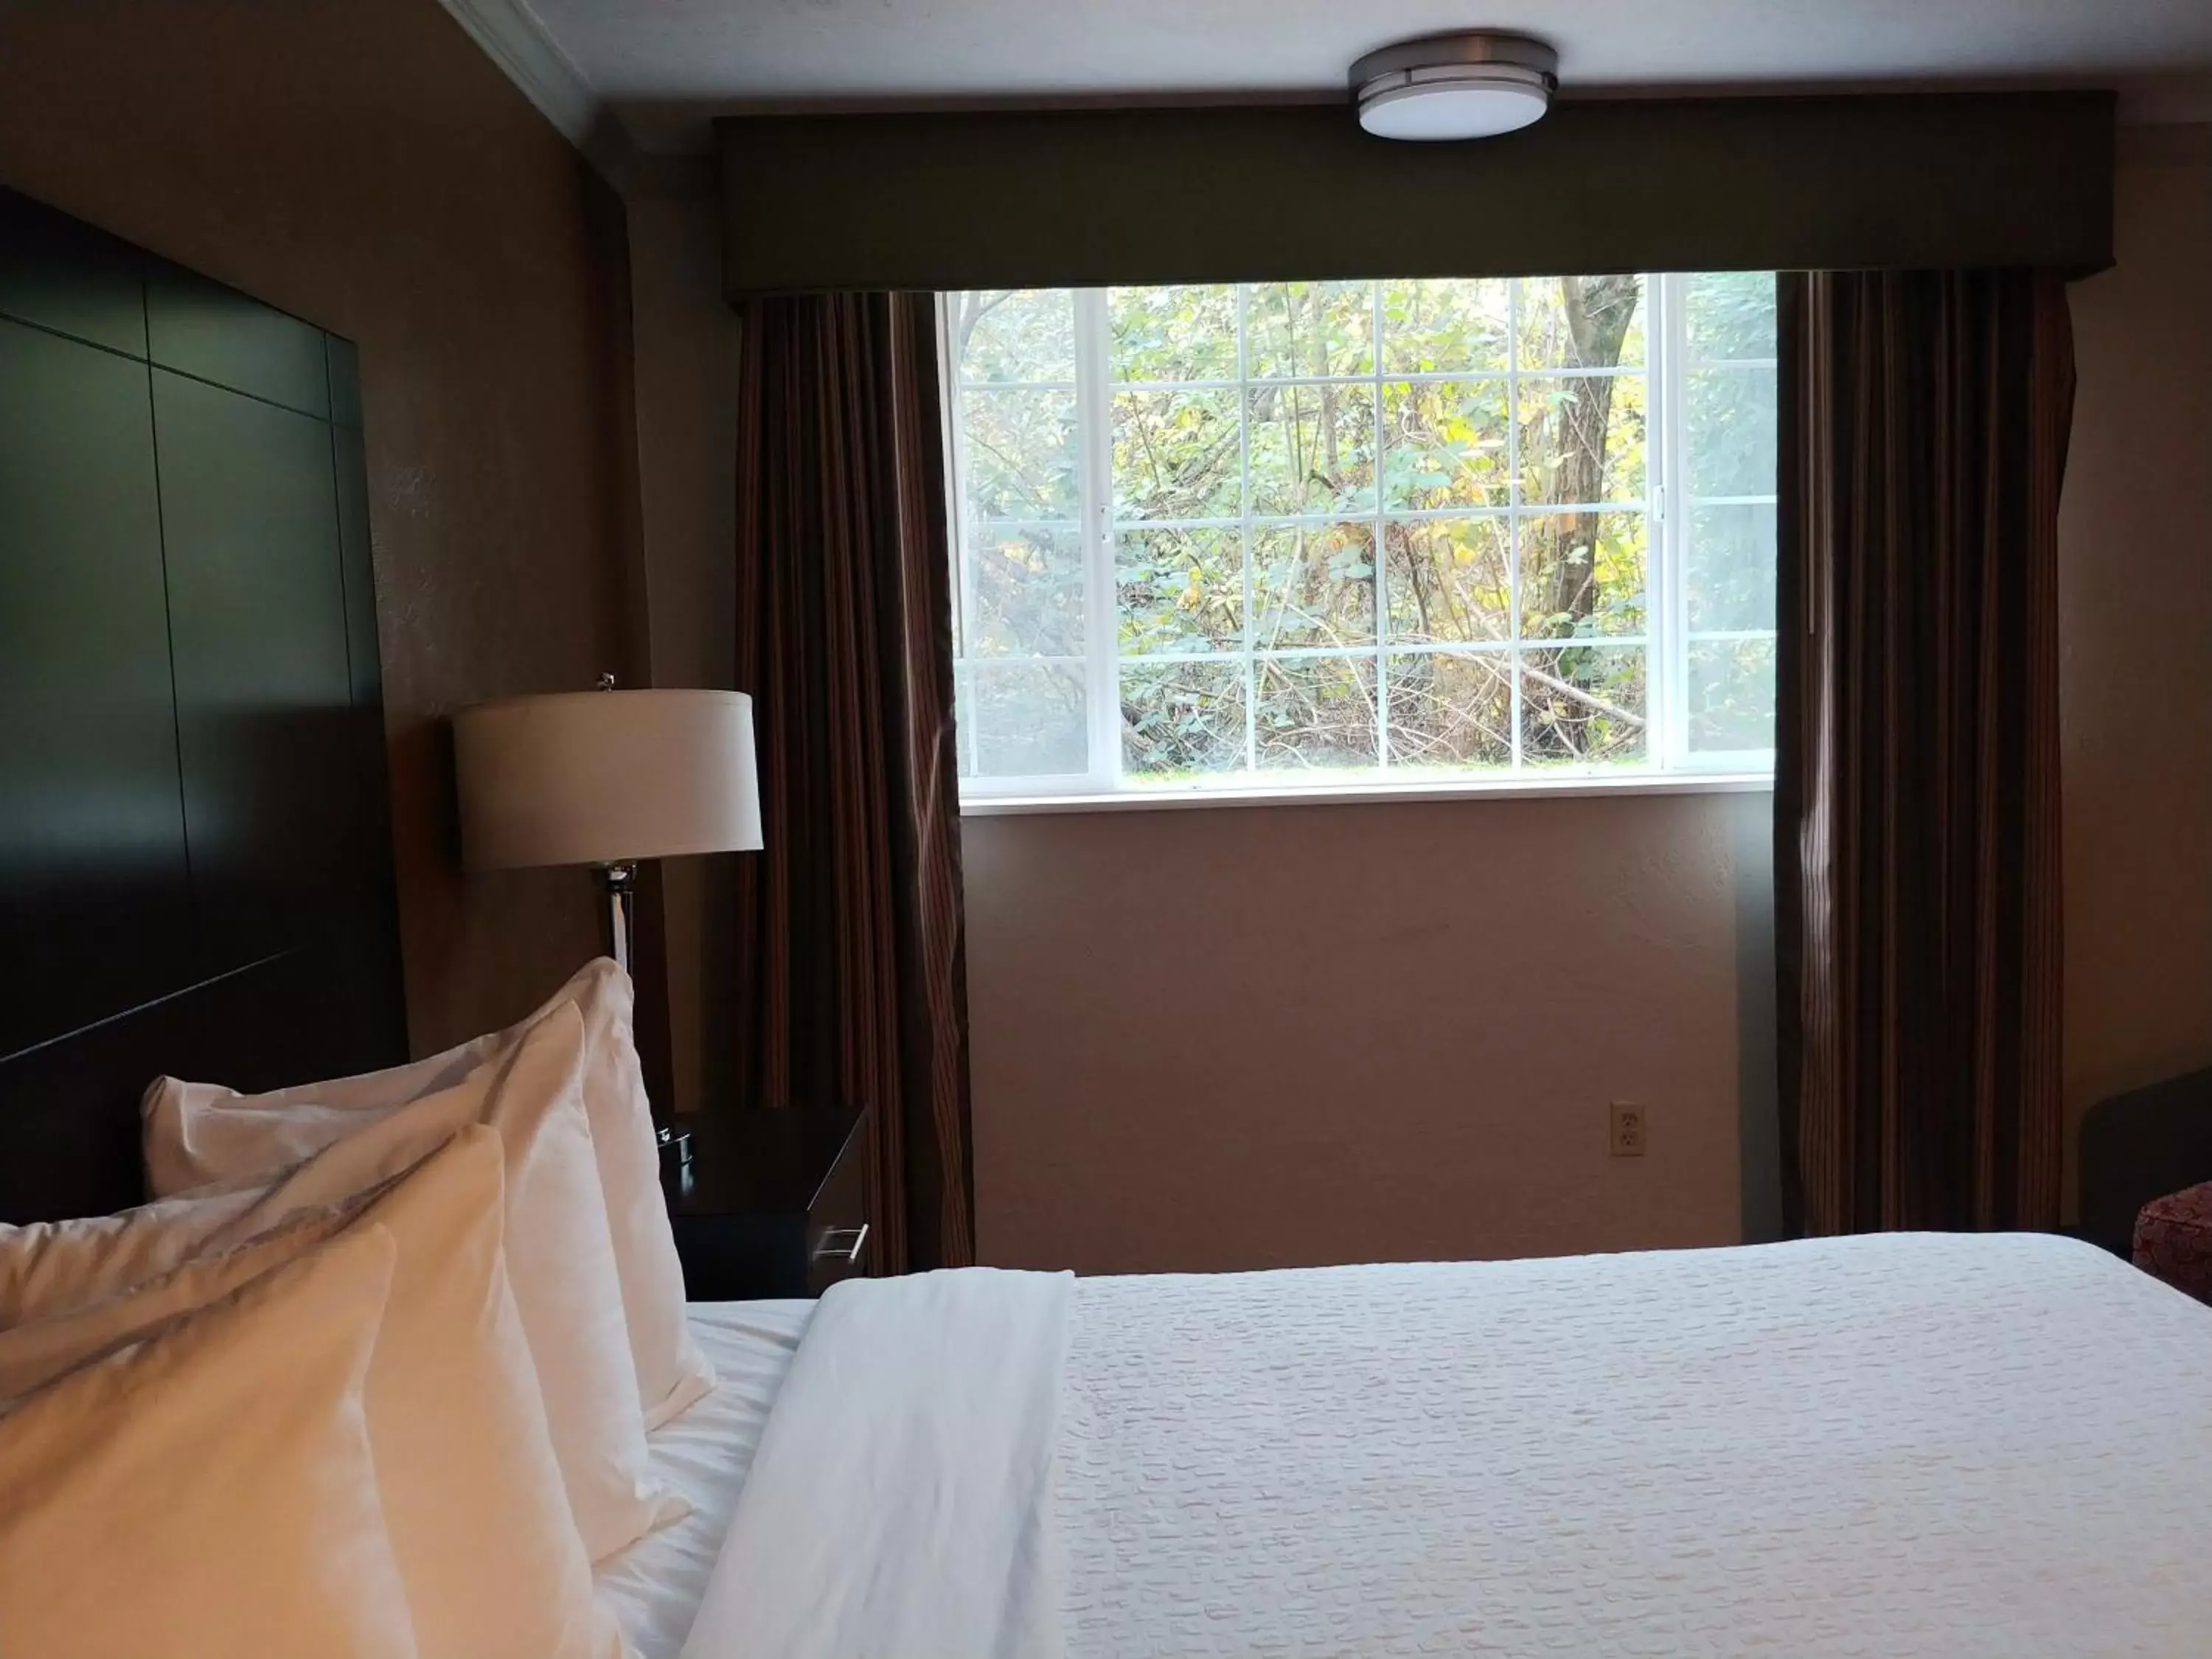 Bed, Room Photo in Best Western Plus Parkway Inn